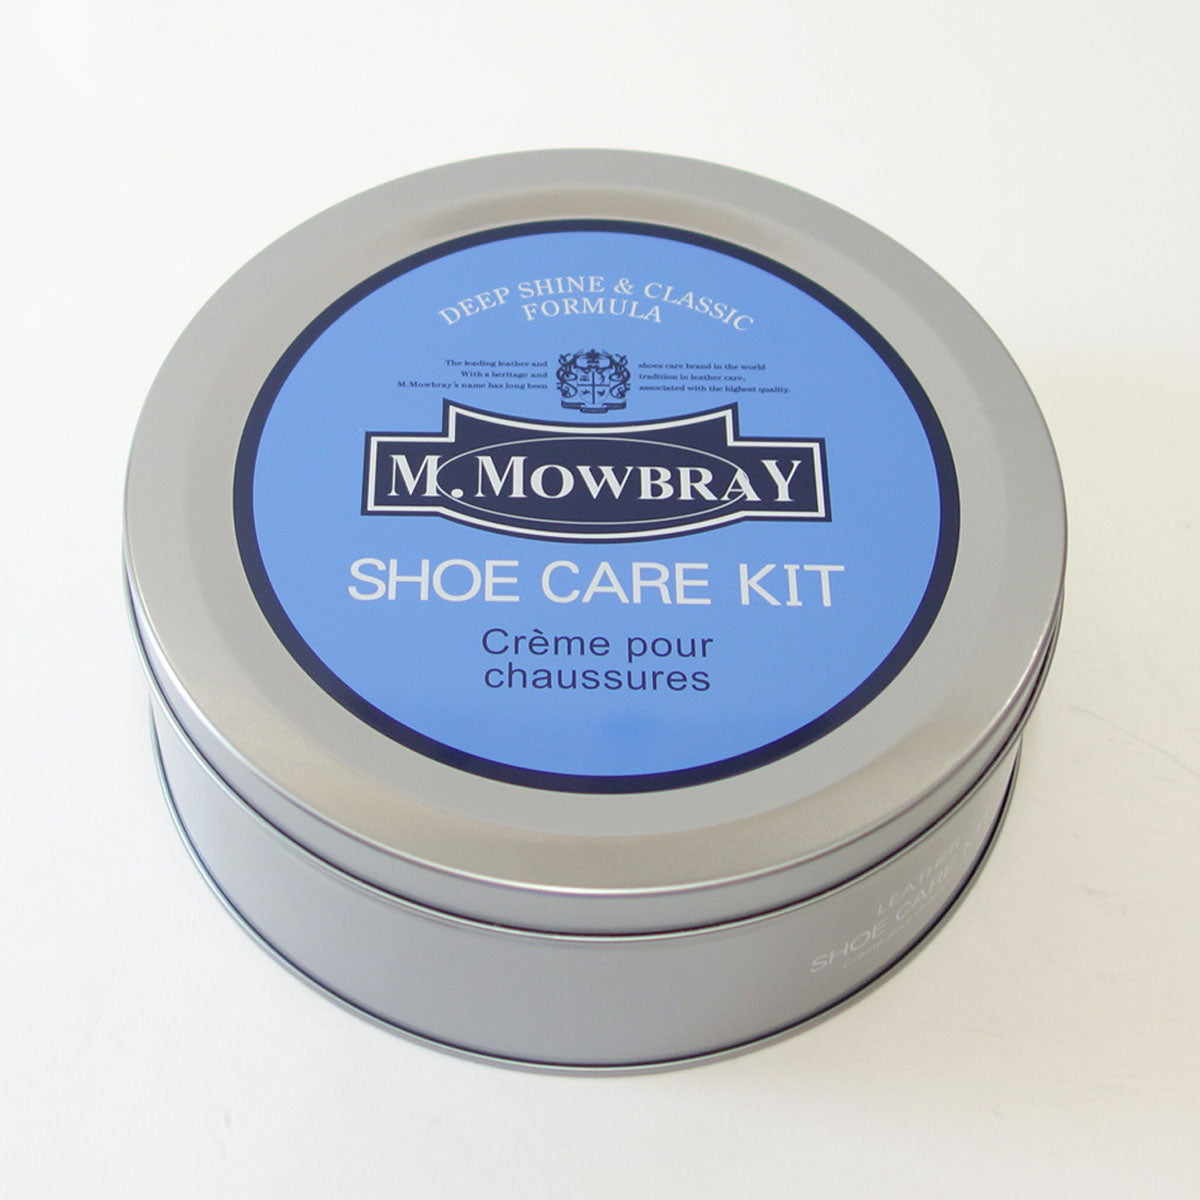 M.MOWBRAY Ｍ．モゥブレィ モゥブレイ・エドワードセット 欧州の靴クリームセット(オリジナル缶入り) モウブレイ R&D